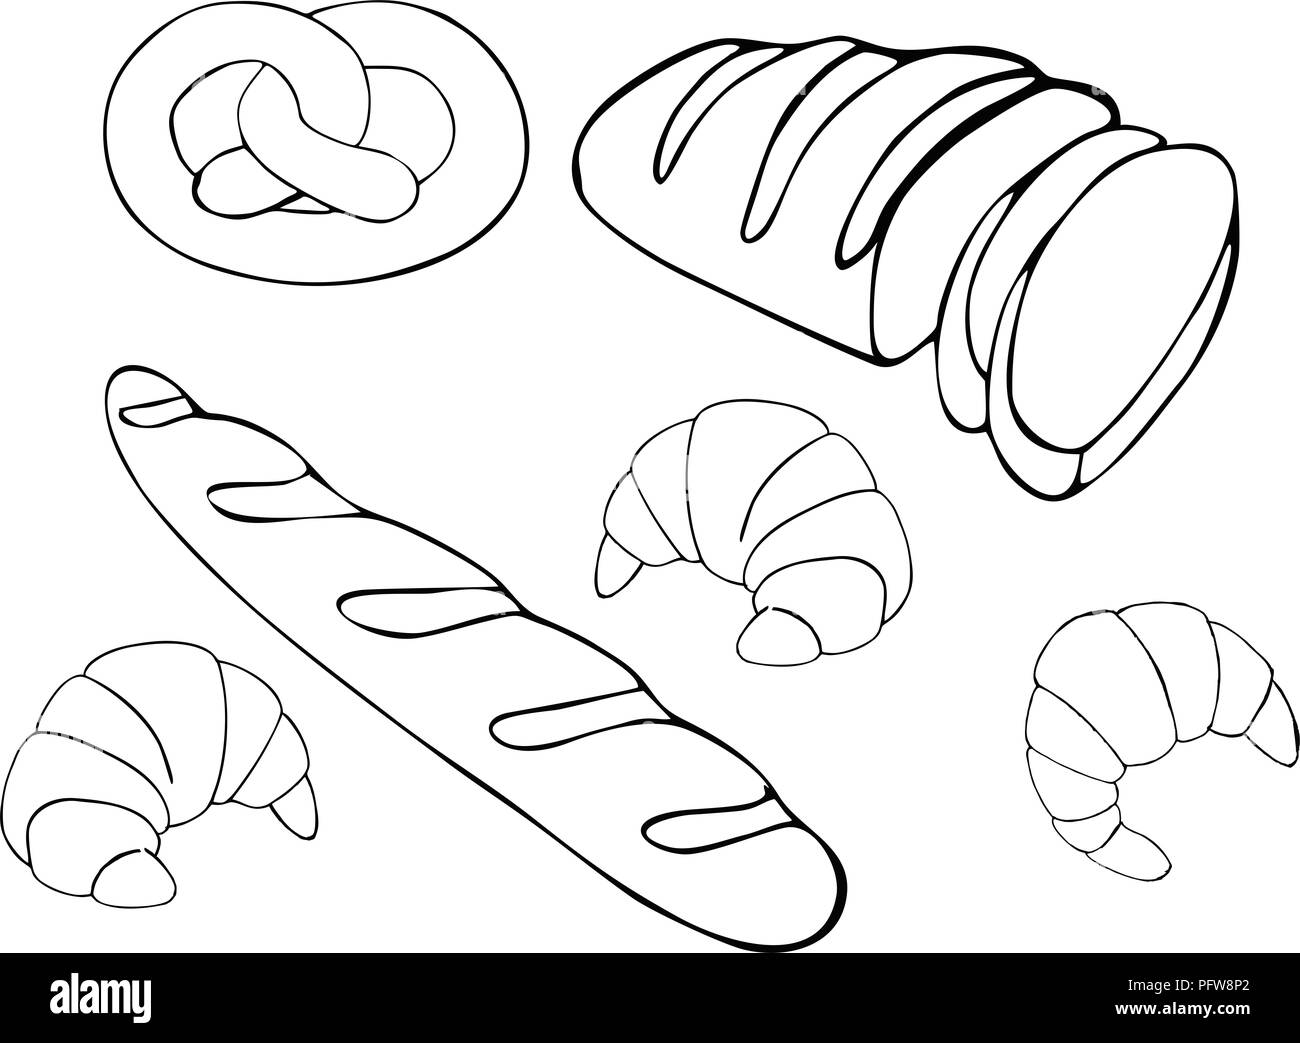 Brot Raster Hand gesetzt Abbildung gezeichnet. Glutenfreie Lebensmittel Bäckerei Sammlung. Auf weissem Hintergrund. Stockfoto